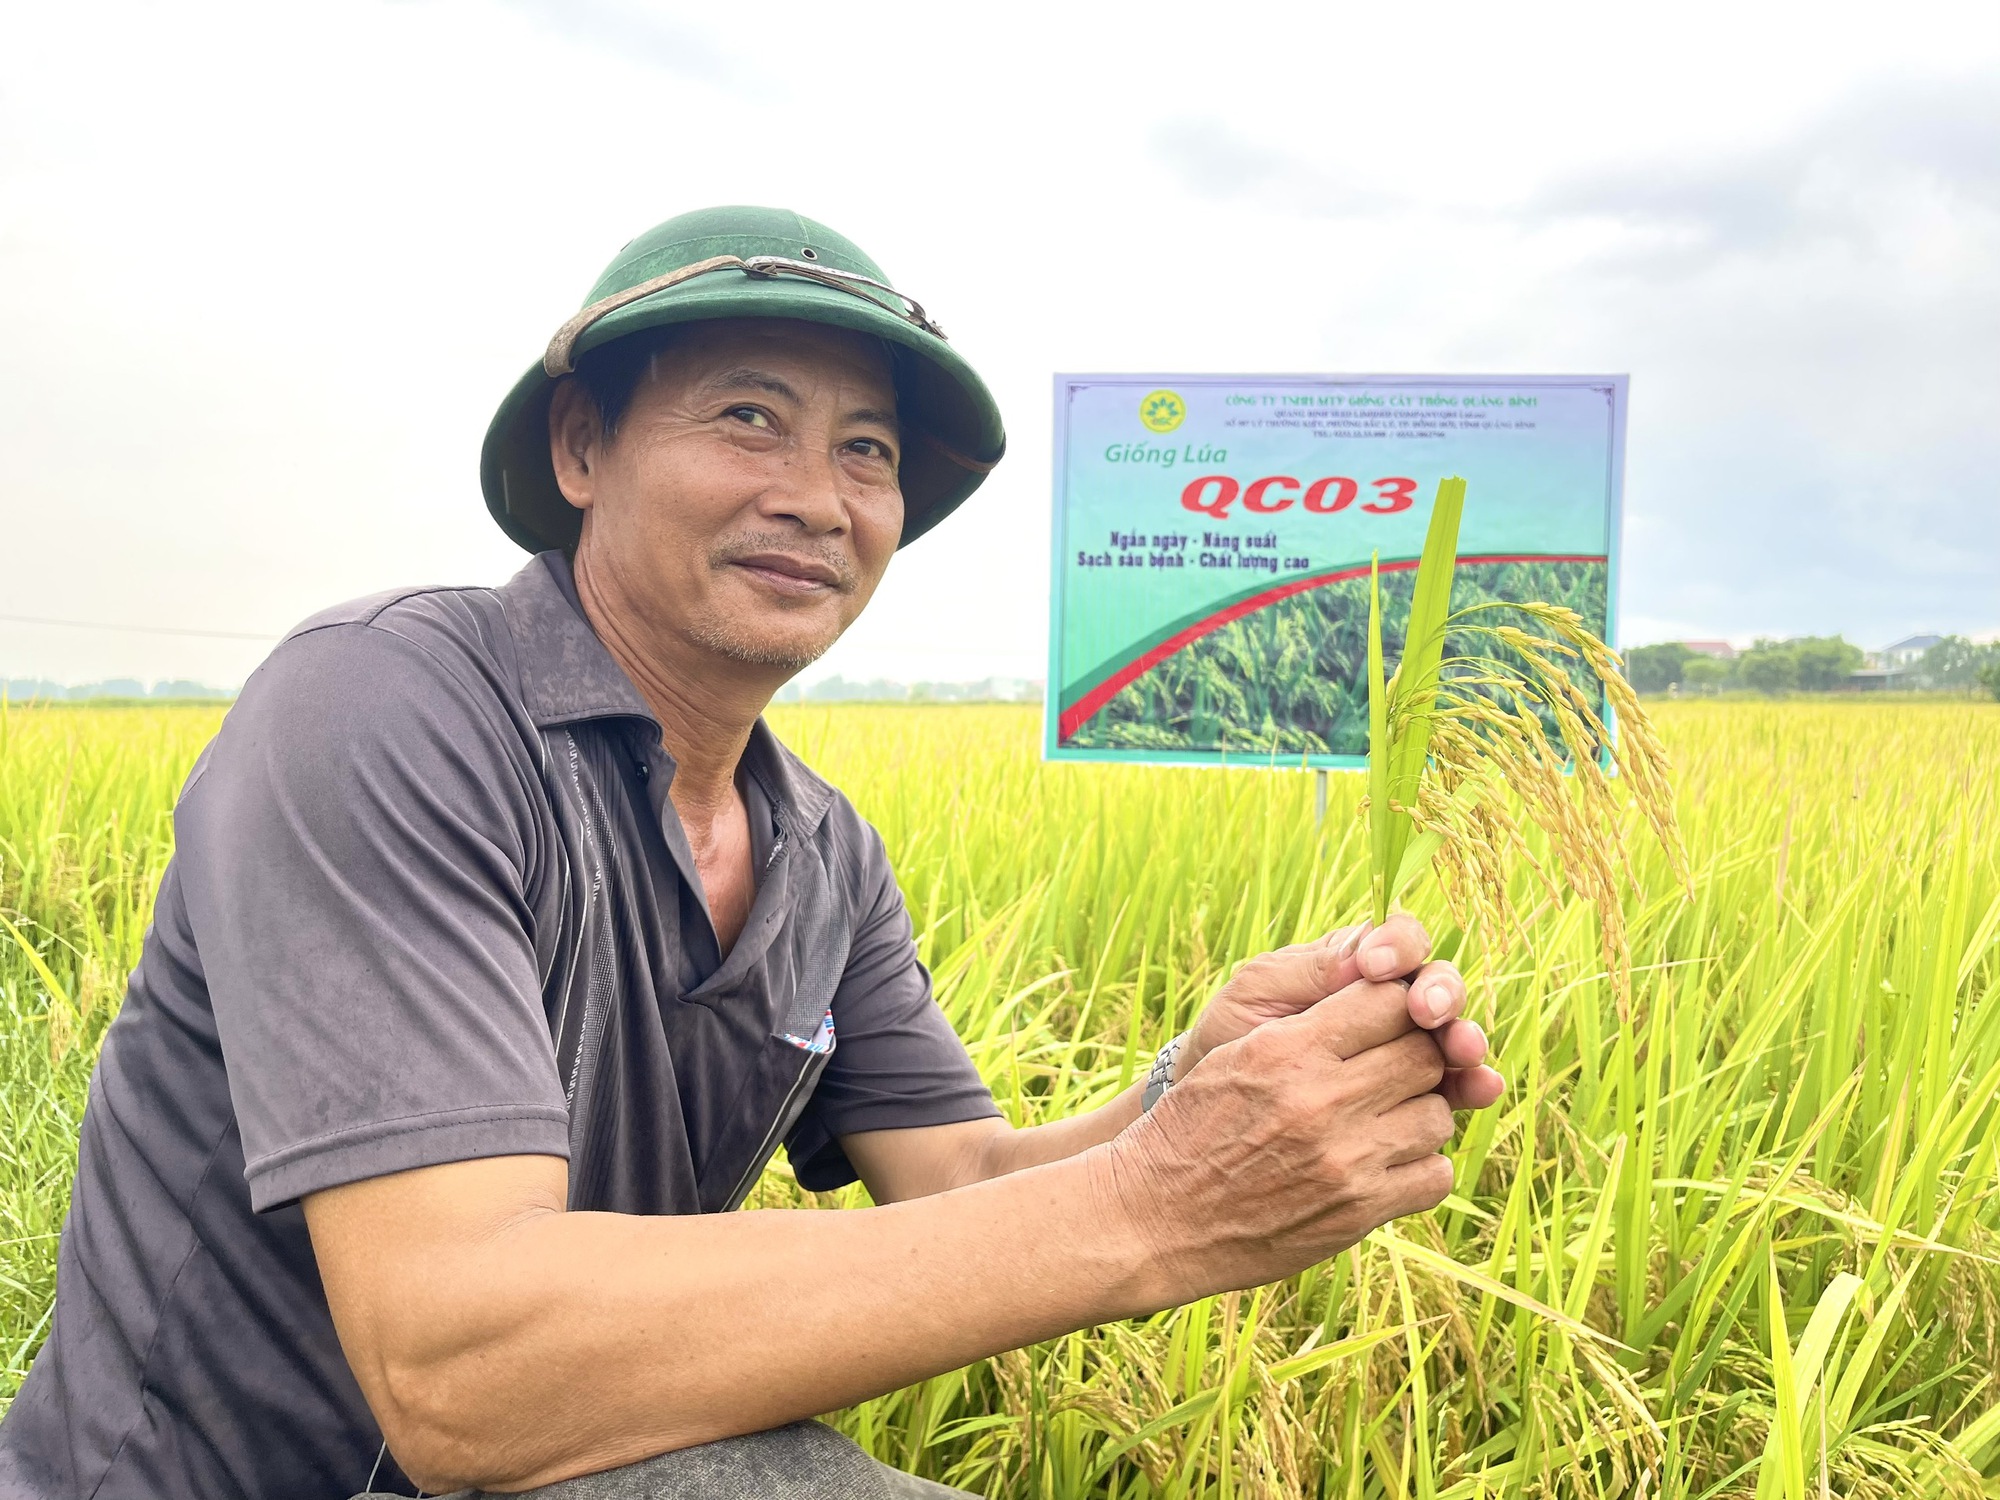 Quảng Bình: Nghỉ lễ, nông dân vẫn ra thăm đồng và đánh giá cao năng suất, chất lượng giống lúa mới này - Ảnh 2.